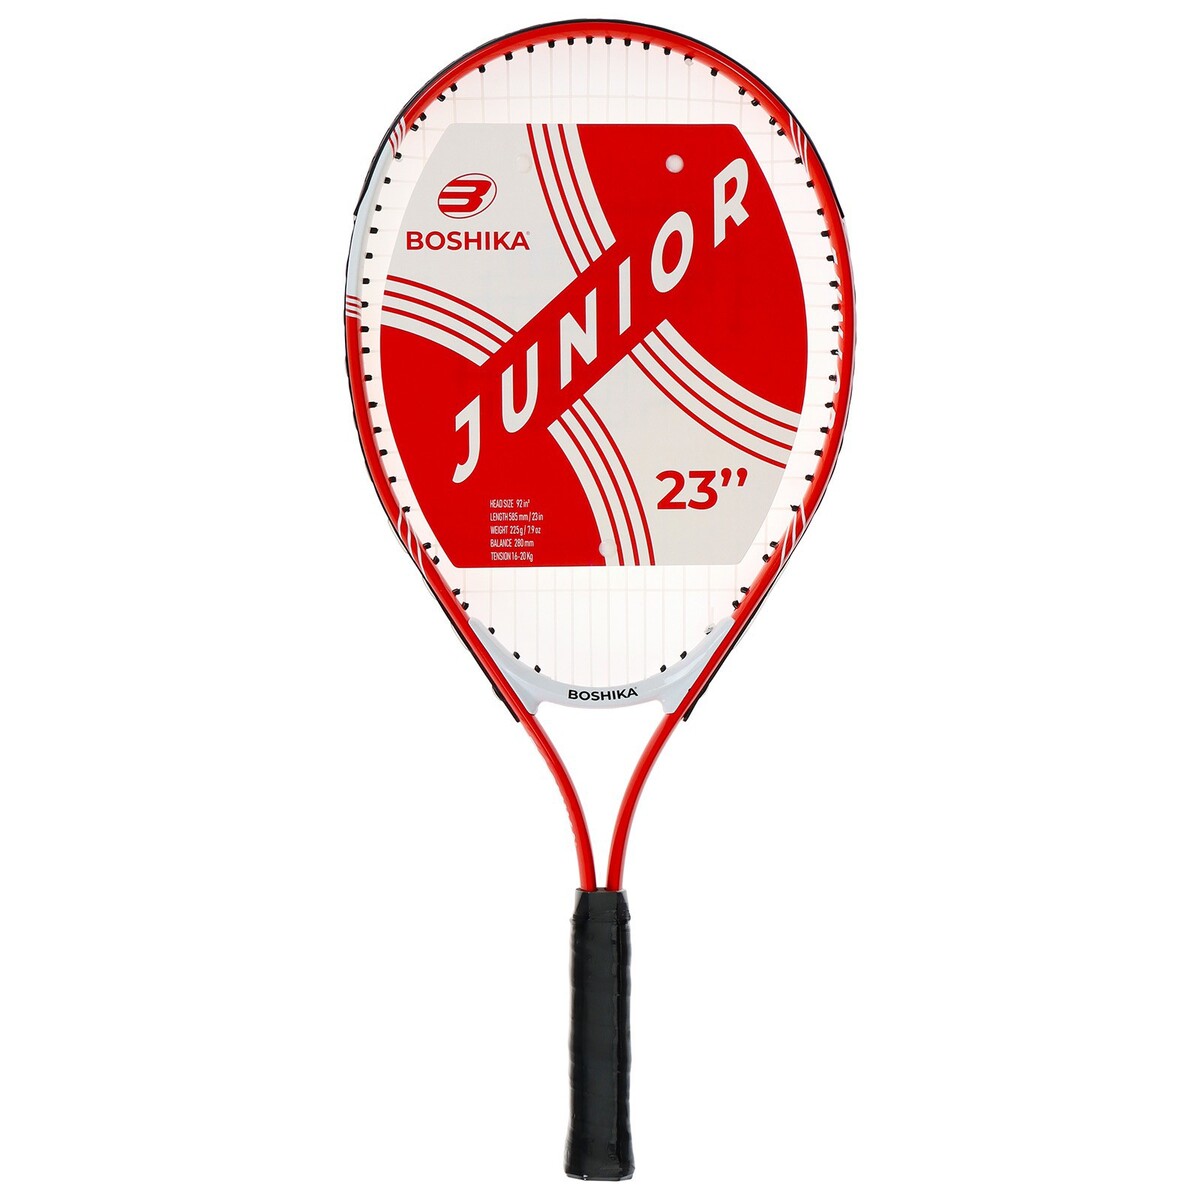 Ракетка для большого тенниса детская boshika junior, алюминий, 23'', цвет красный ракетка для большого тенниса head ti instinct comp gr3 235611 сине голубой